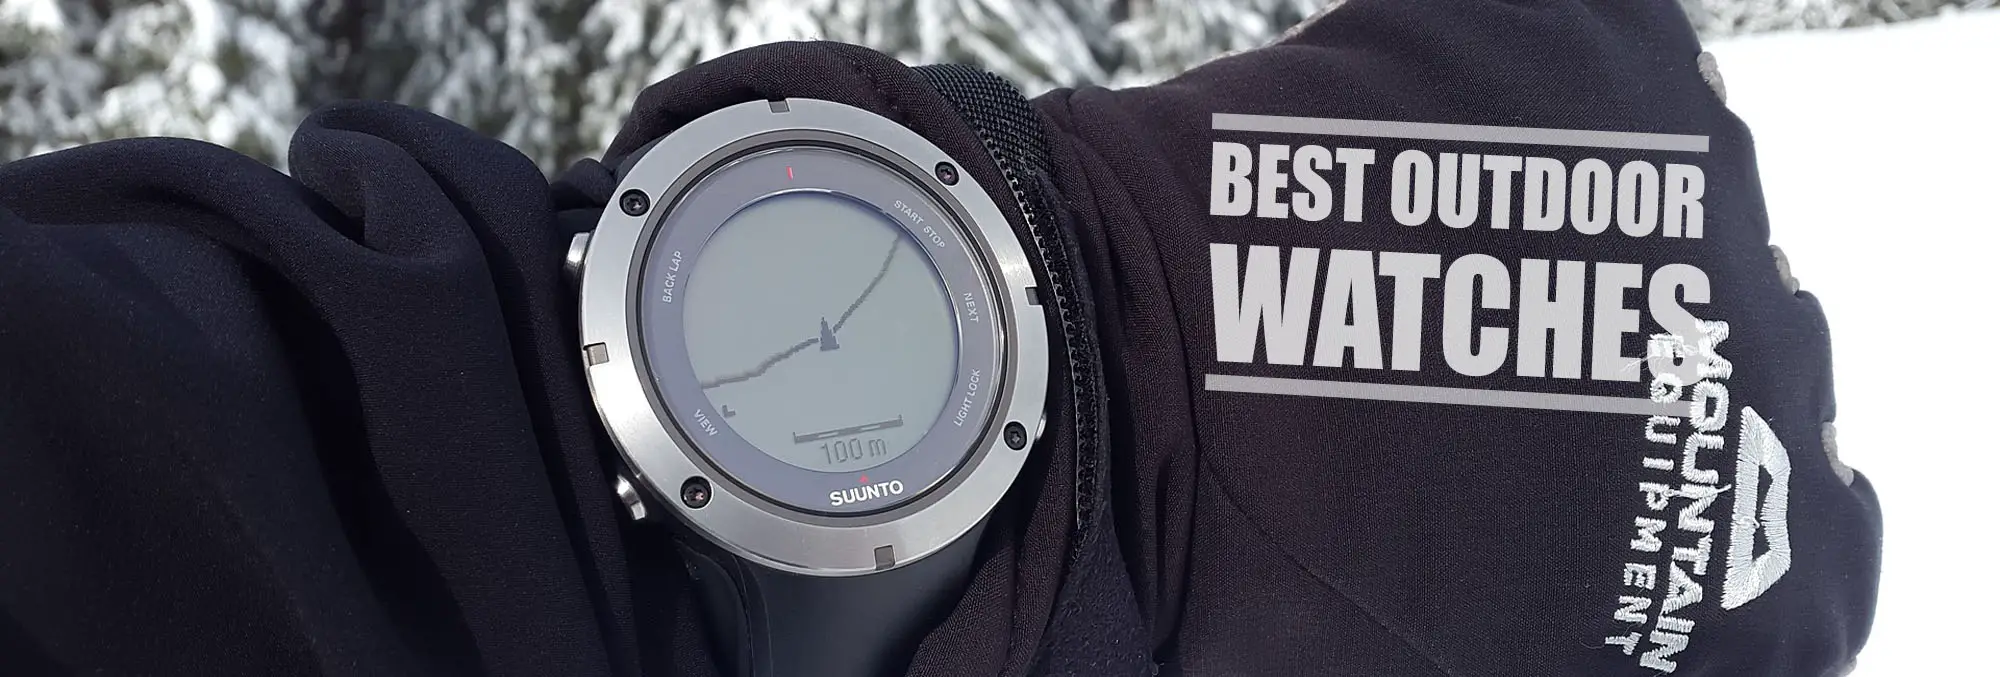 Best outdoor watches header